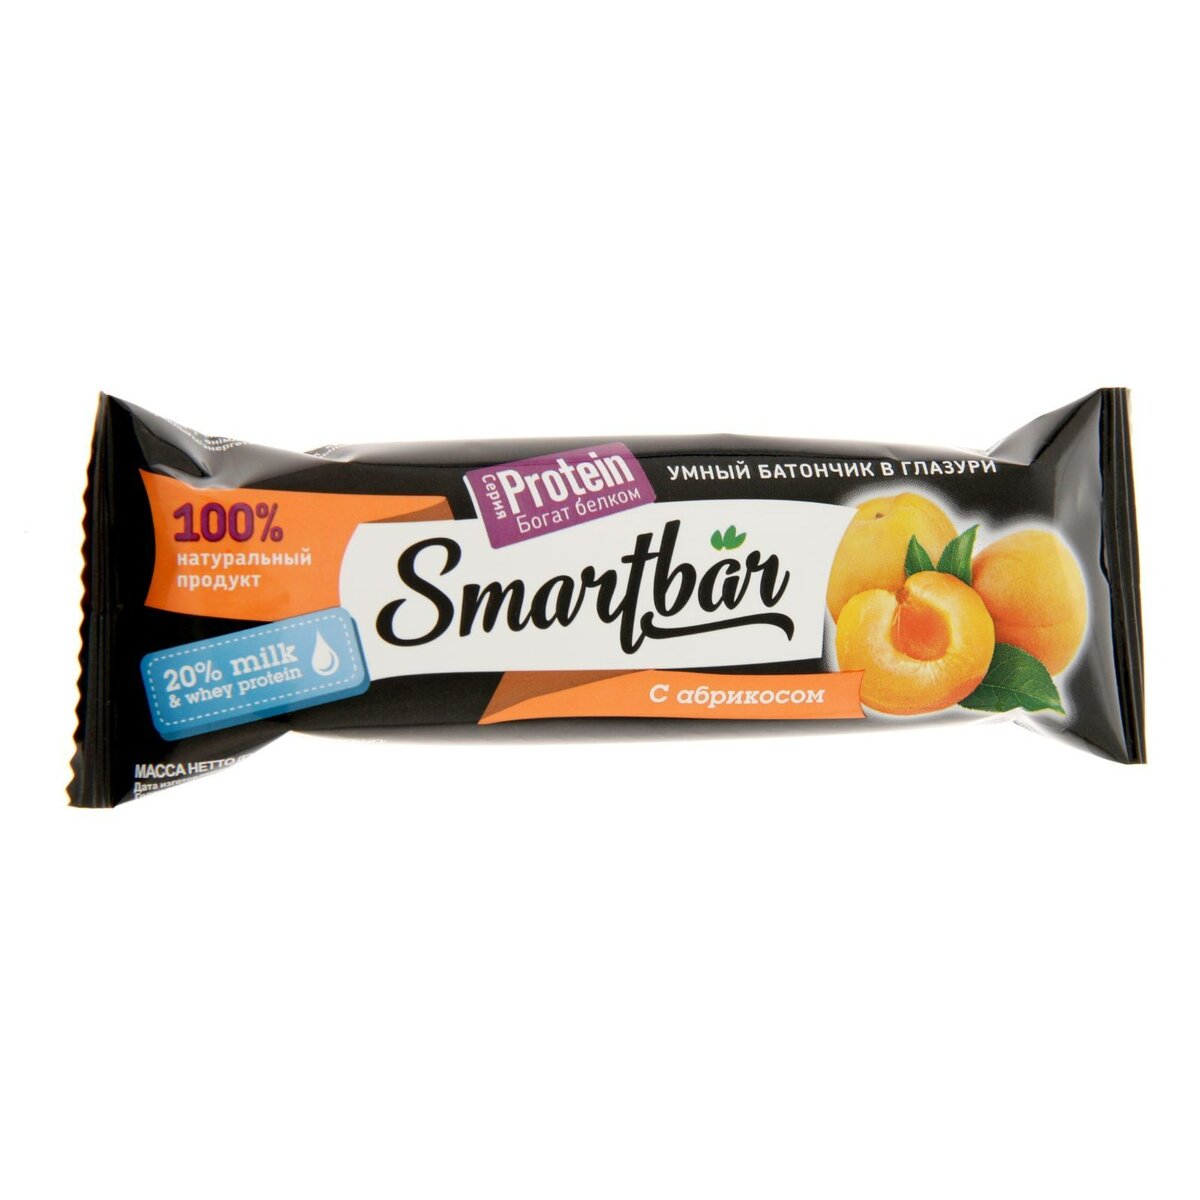 Батончик Smartbar протеиновый 20% абрикос в йогуртовой глазури 40 г